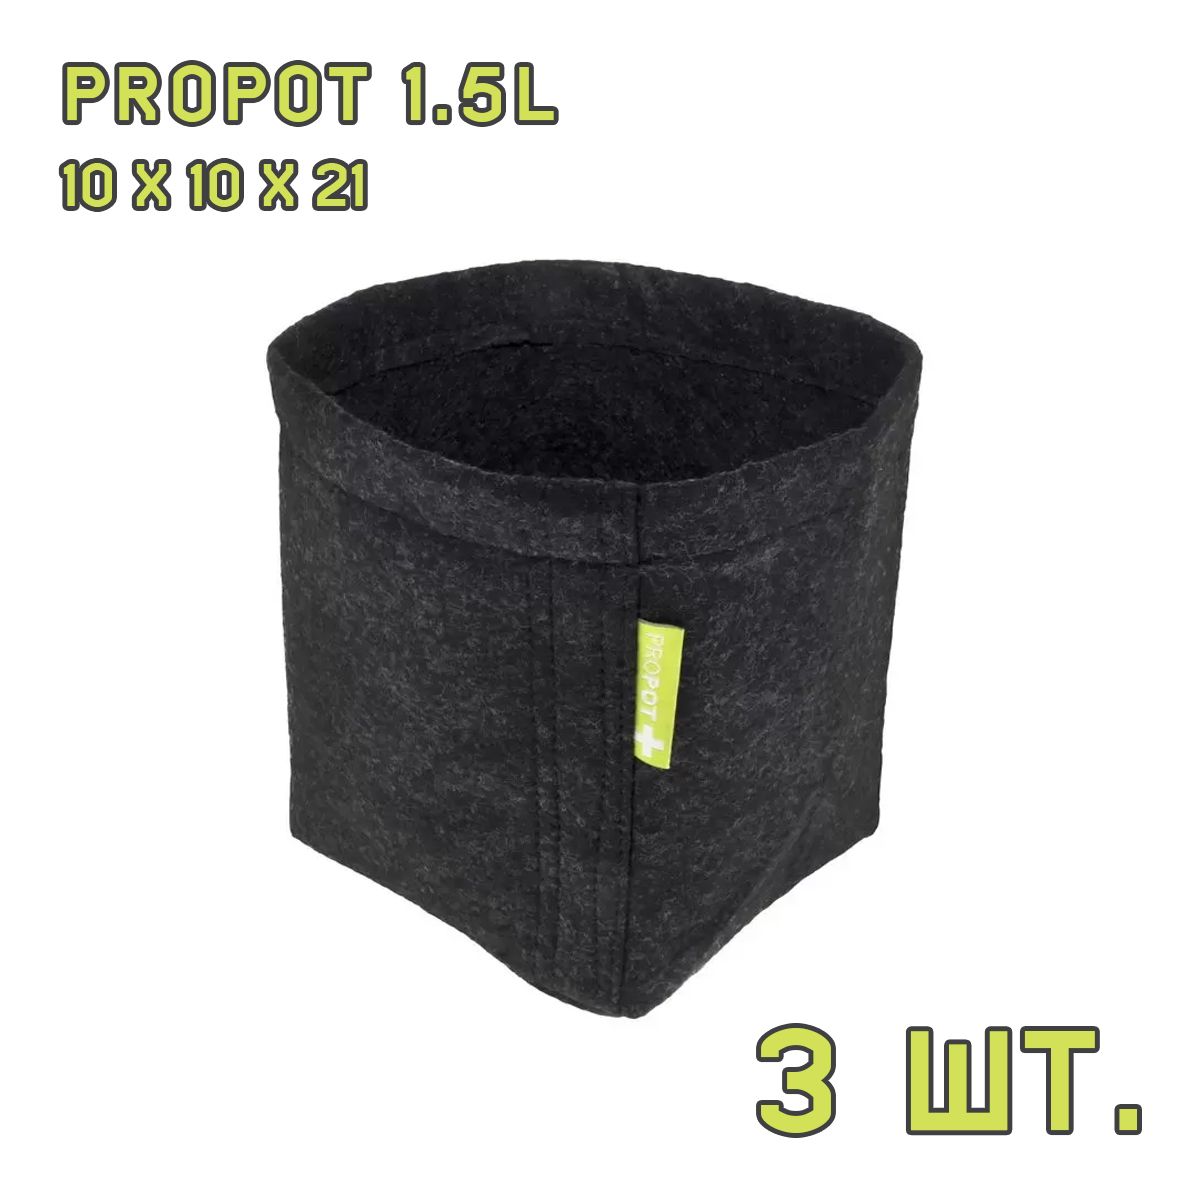 Текстильный горшок PROPOT 1.5L 3 шт.